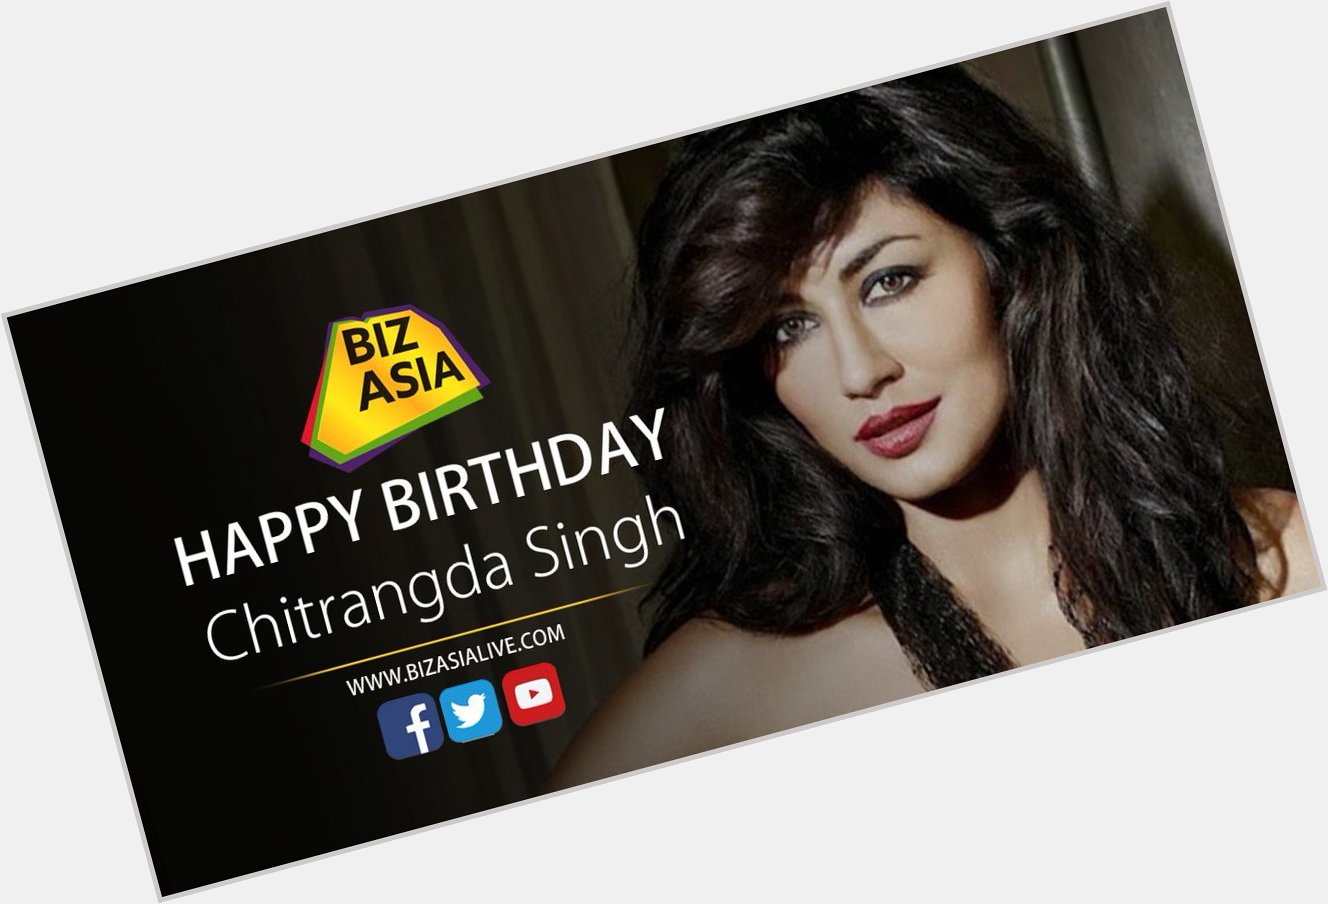  wishes Chitrangda Singh a very happy birthday.  